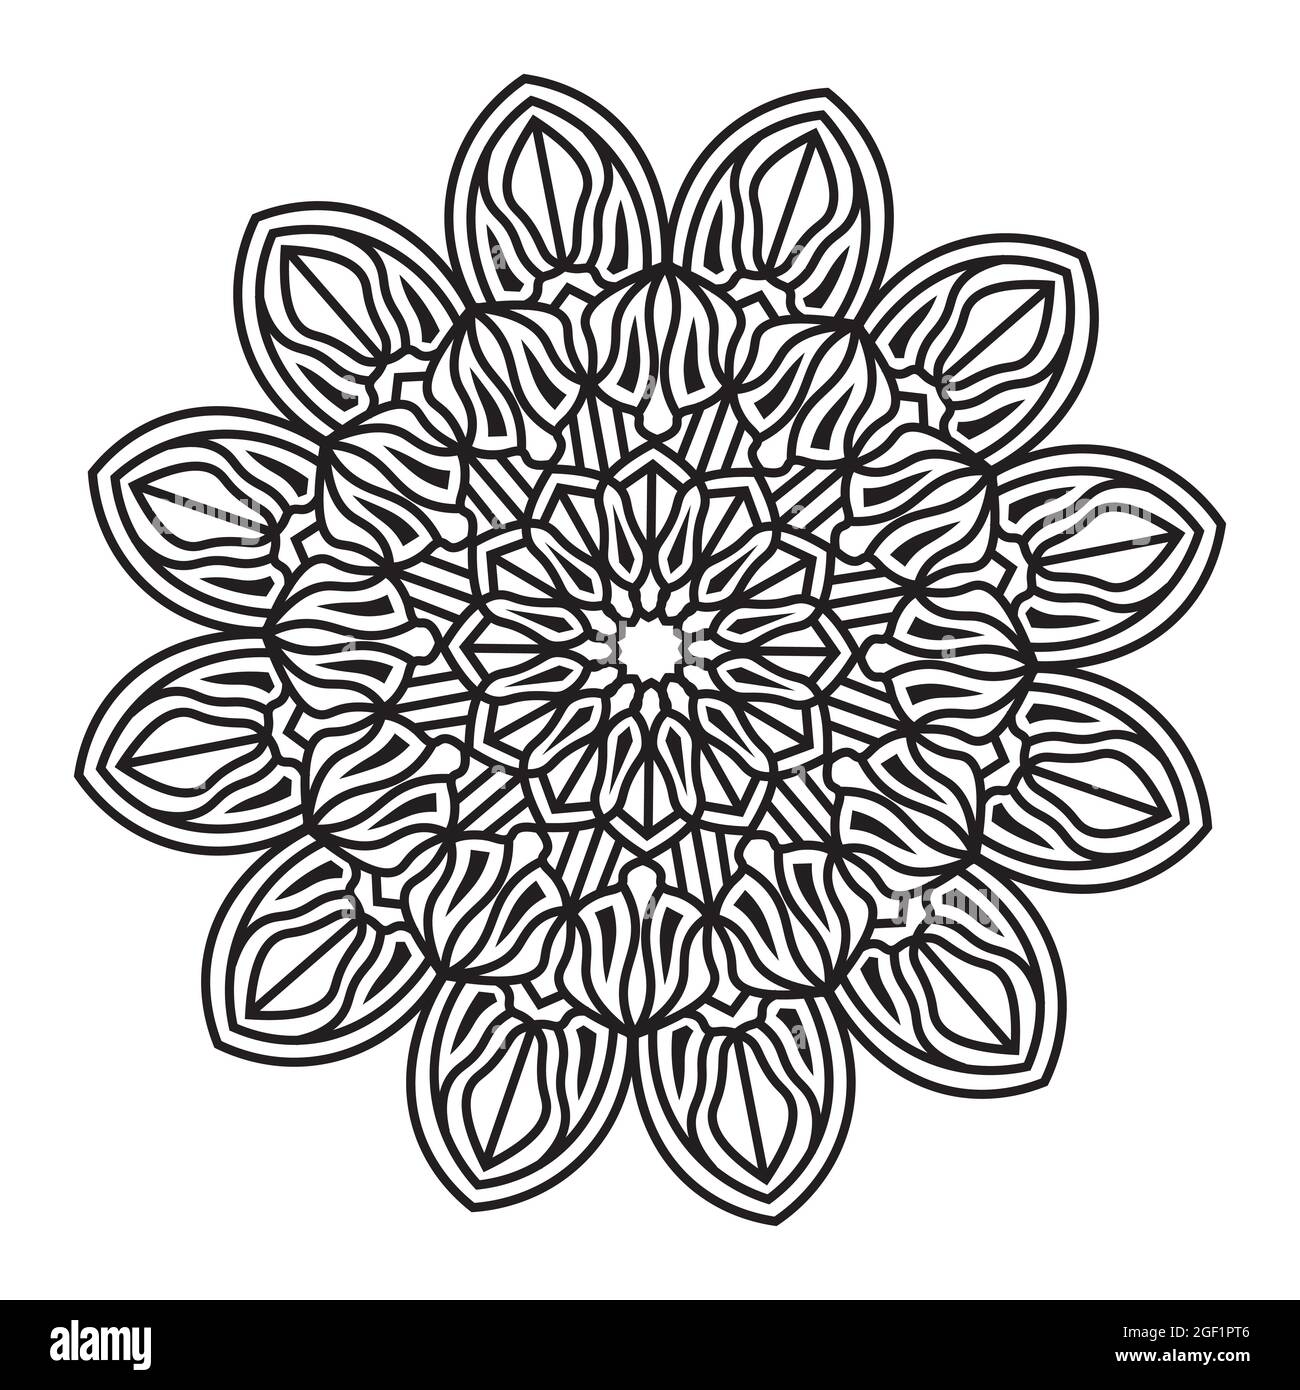 mandala isoliert Element der indischen ornamental dekorativen floralen Stil abstrakt schwarz und weiß Muster Hintergrund-Design Stock Vektor